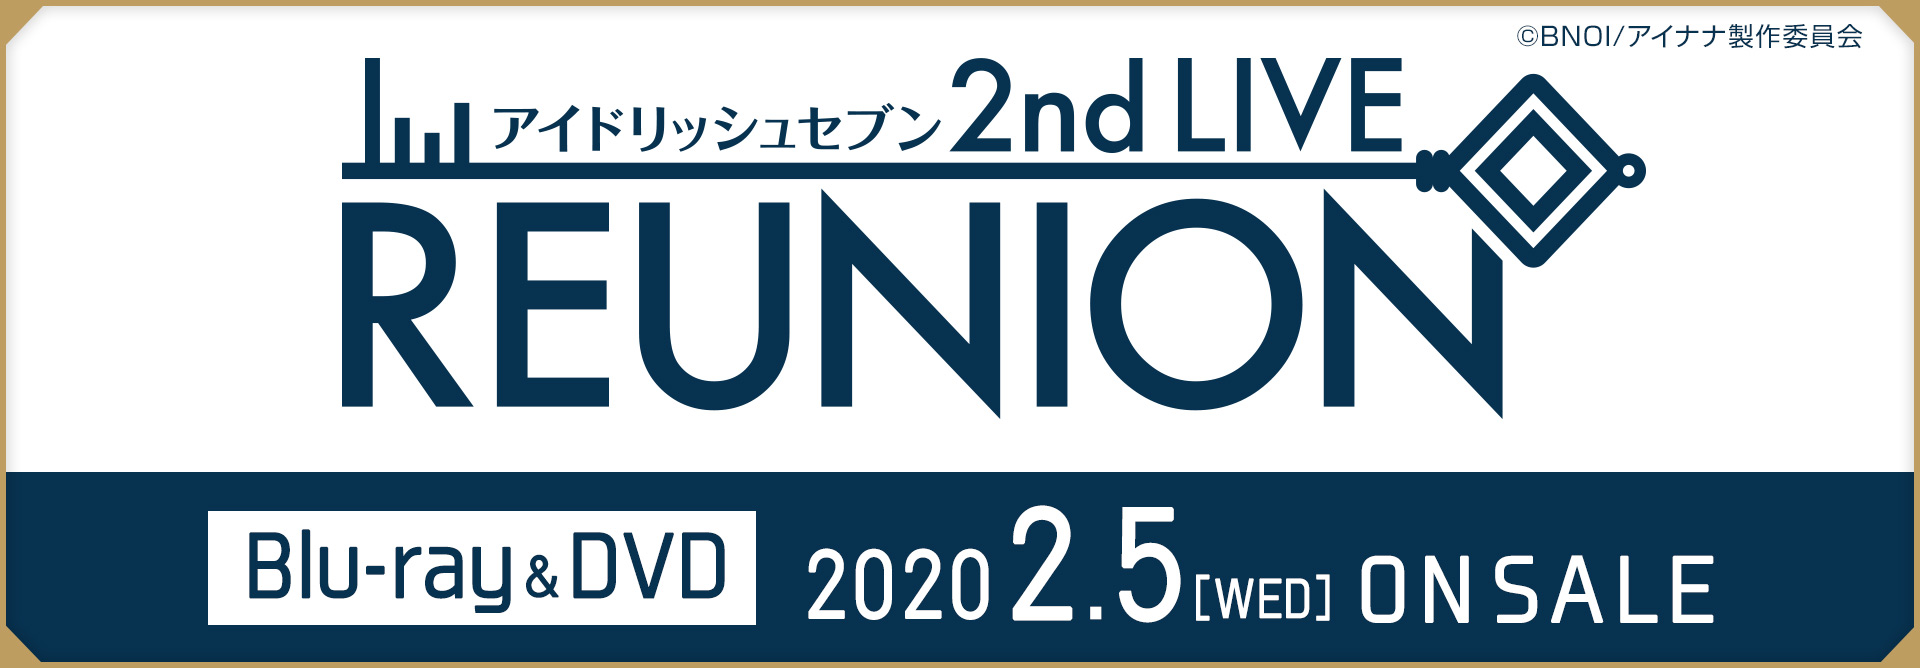 アイドリッシュセブン 2nd LIVE『REUNION』事後通販